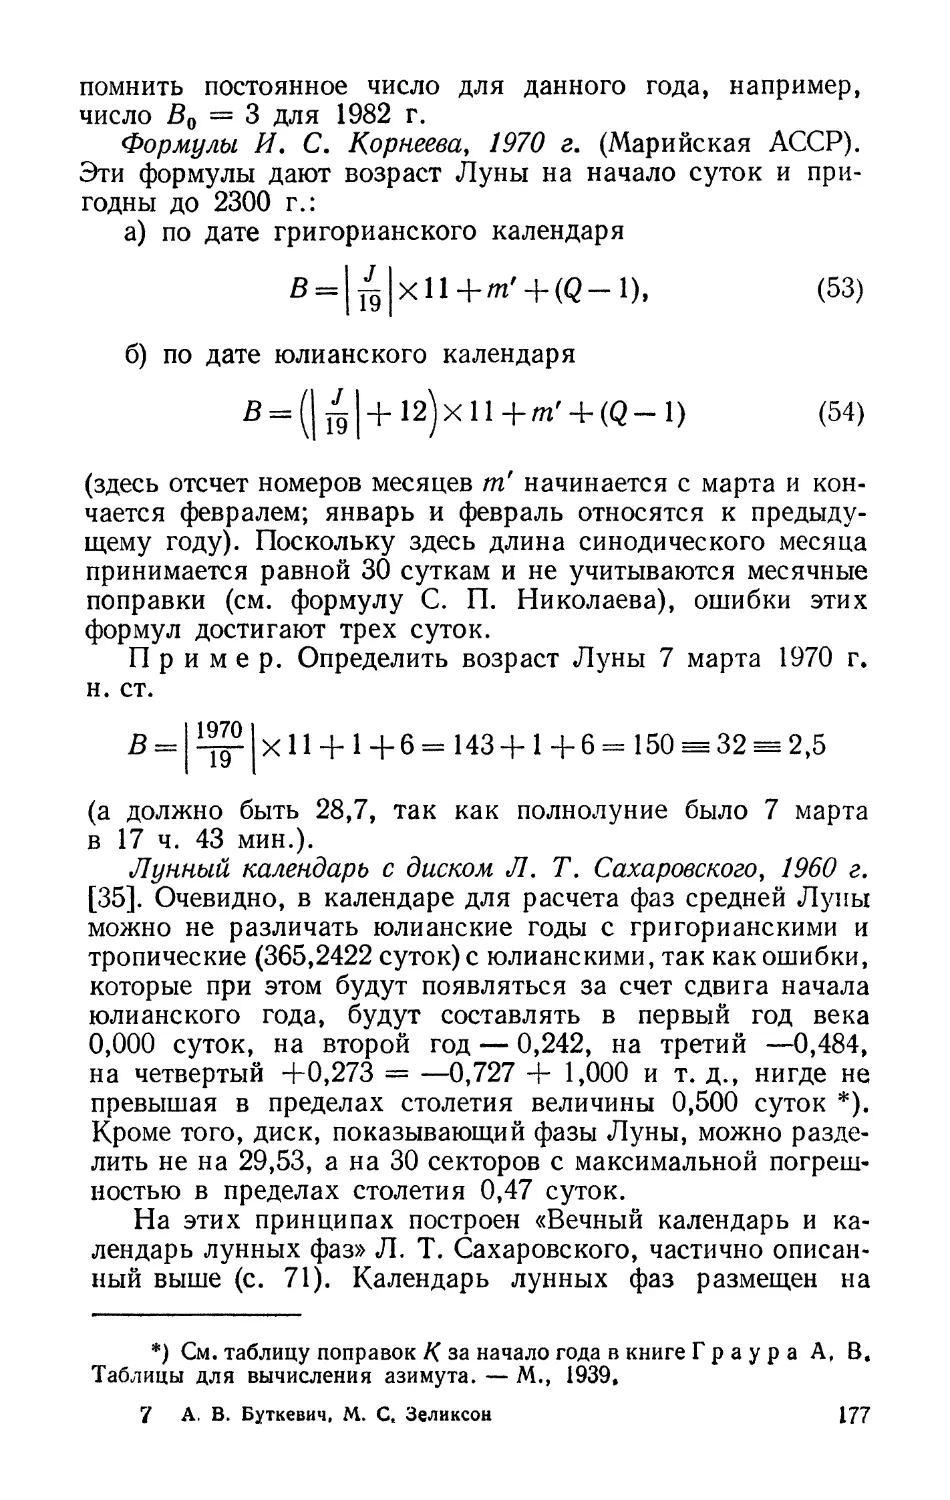 Формулы И. С. Корнеева, 1970 г.
Лунный календарь с диском Л. Т. Сахаровского, 1960 г.